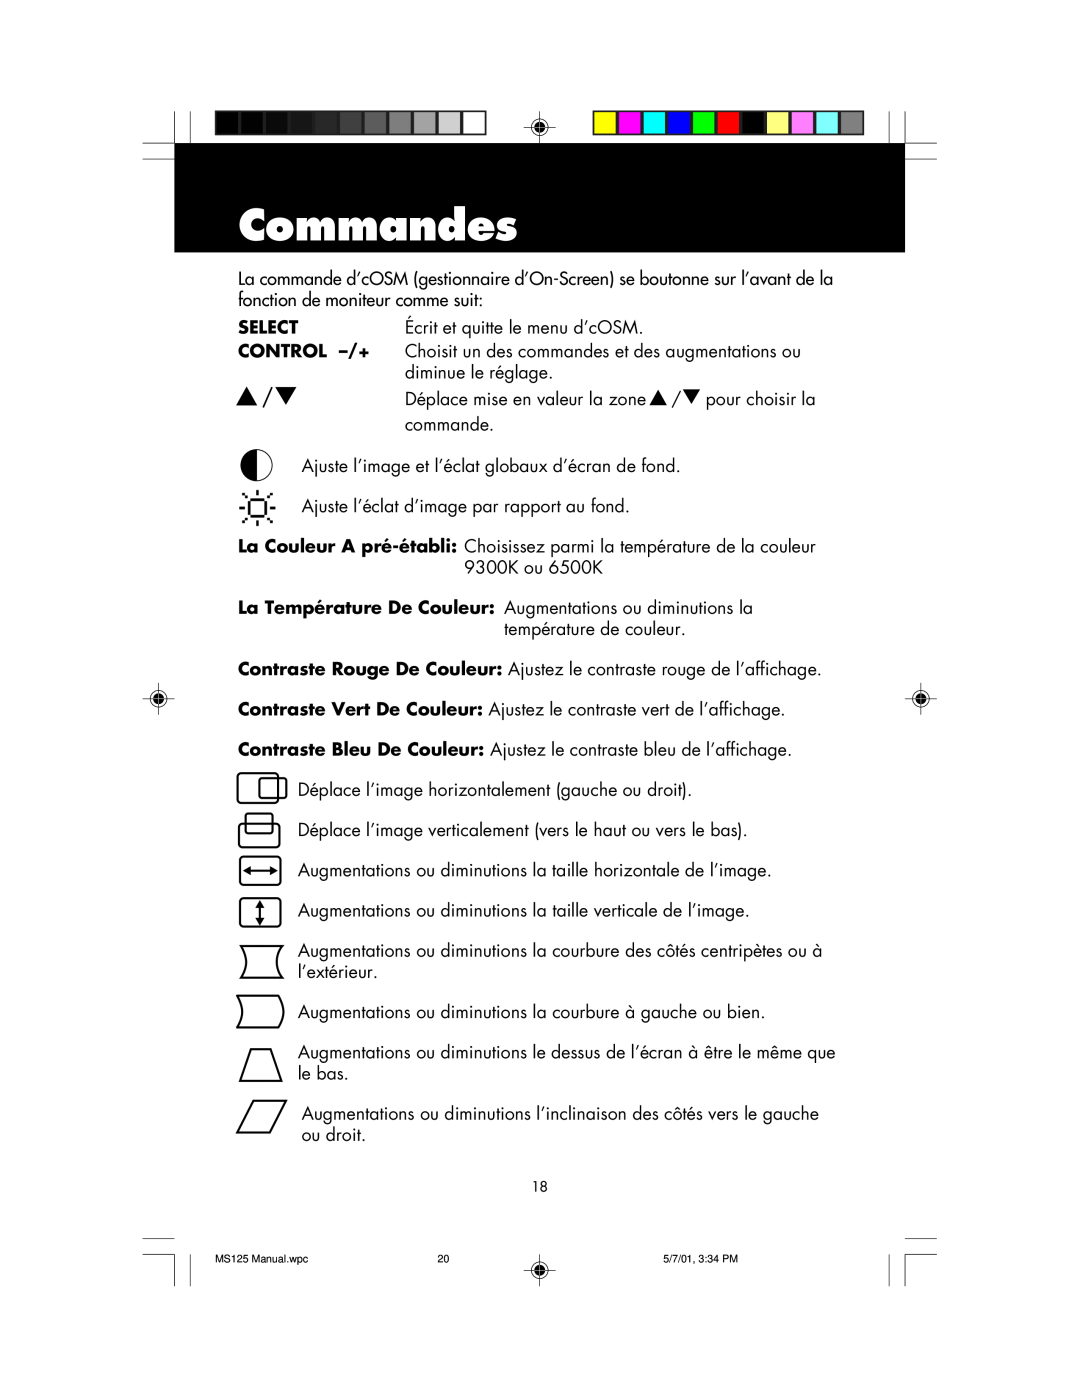 NEC MS125 manual Commandes 